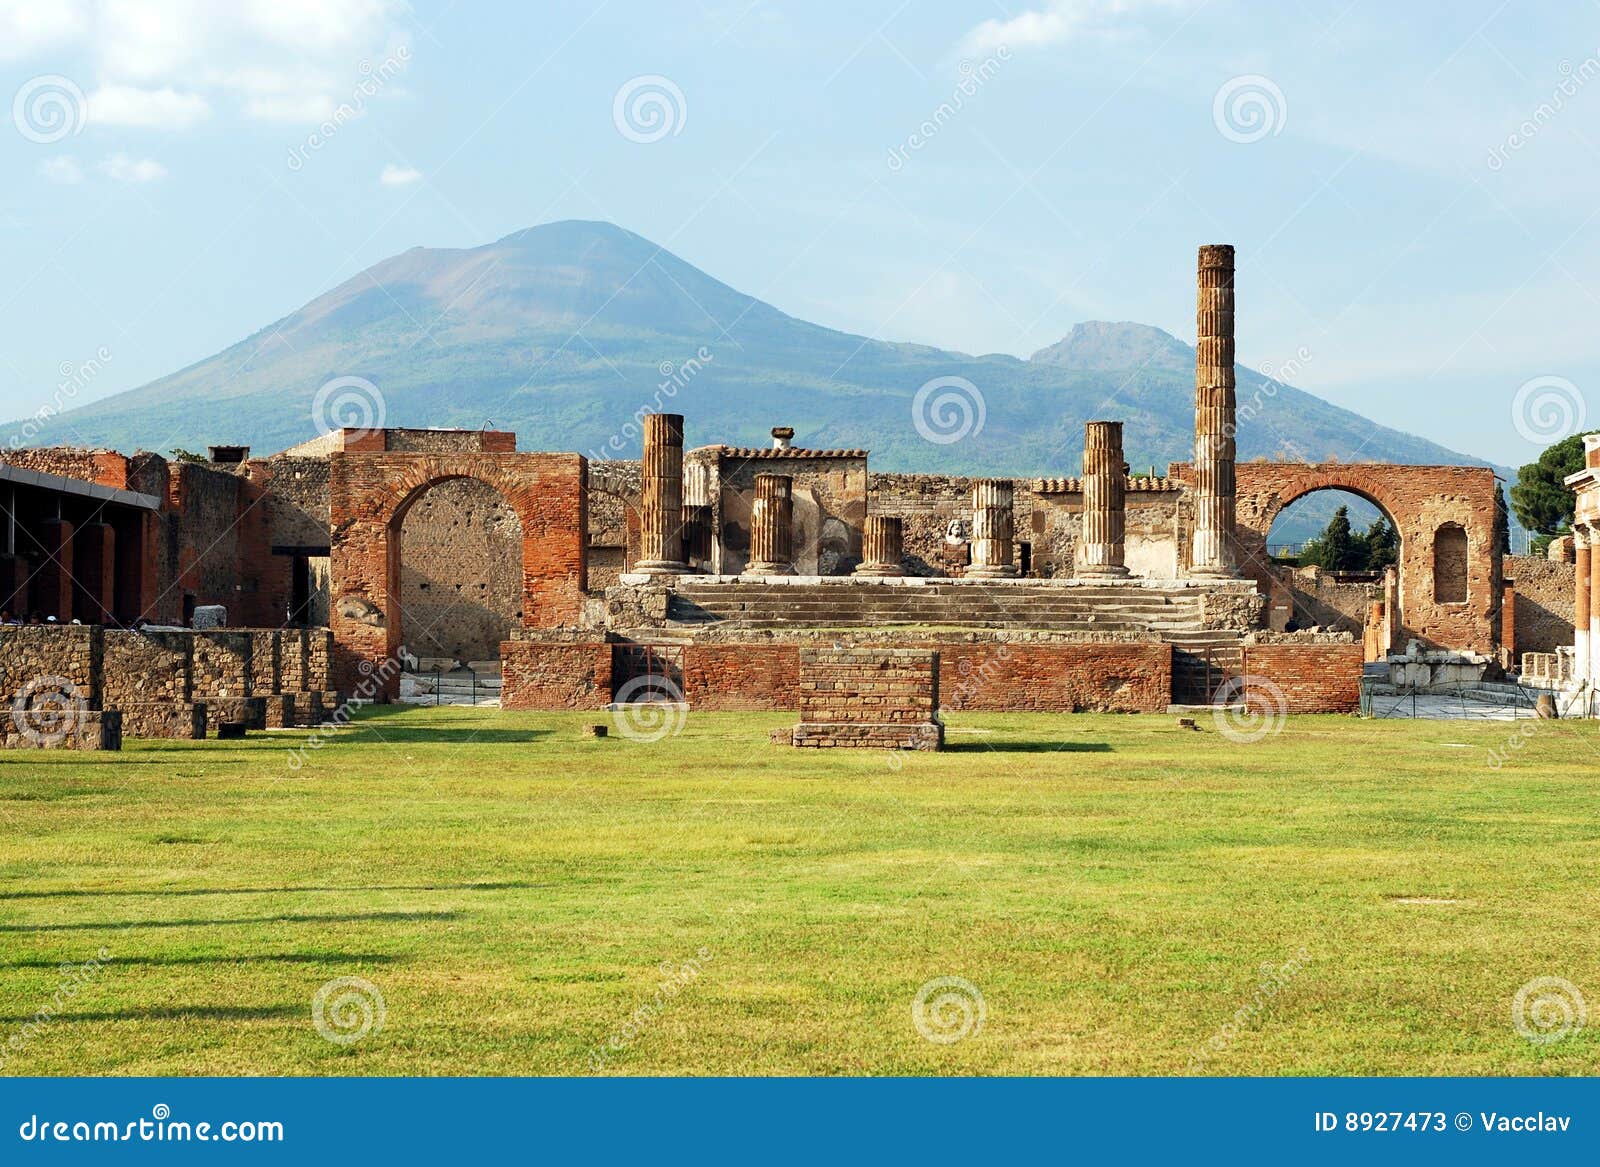 pompeii and mount vesuvius